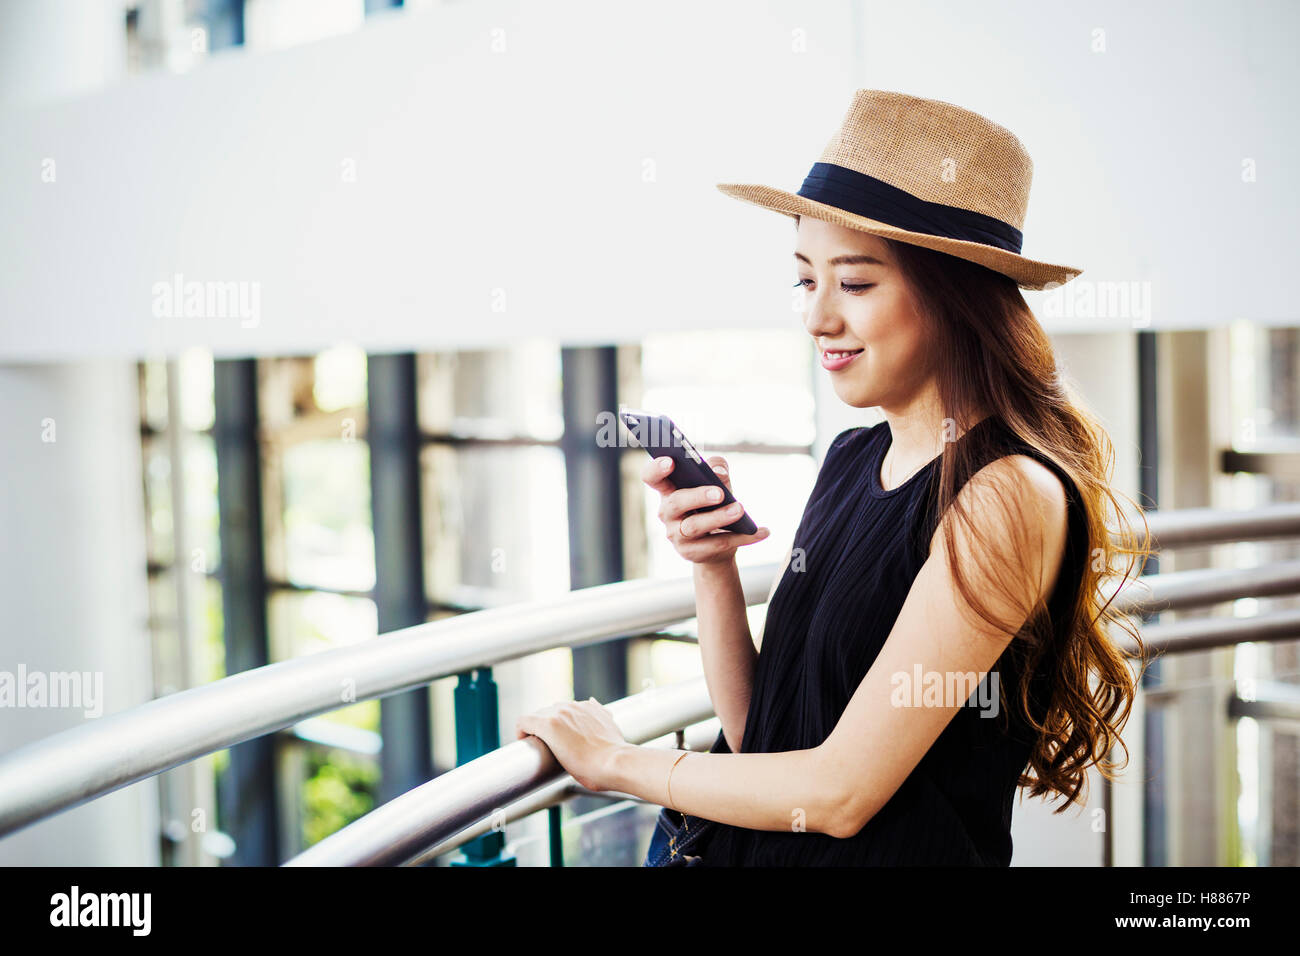 Giovane donna con capelli lunghi marrone, indossando un cappello di Panama, in un centro commerciale, utilizzando un telefono cellulare. Foto Stock